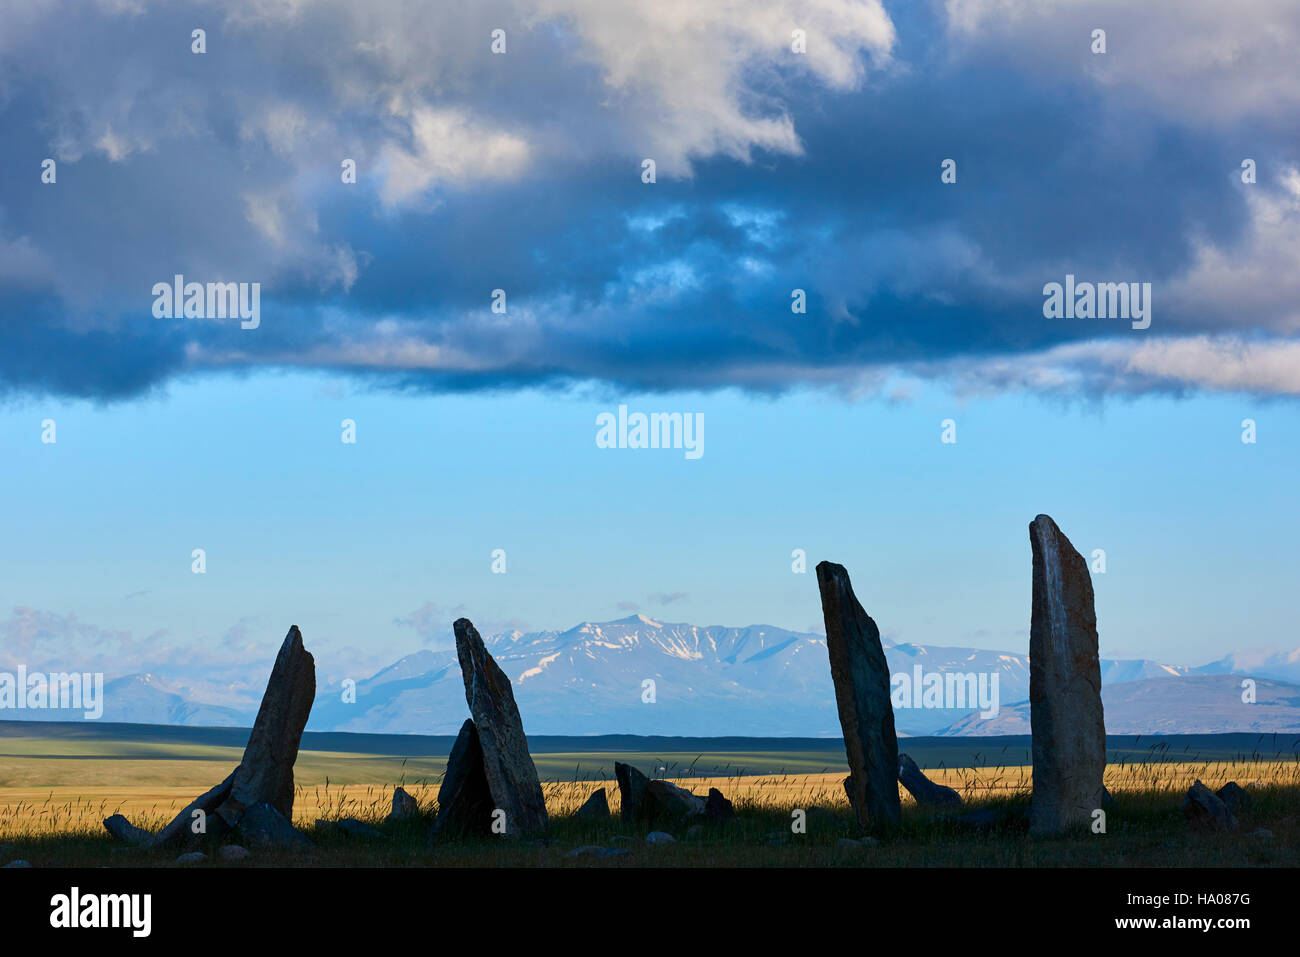 Mongolia, Bayan-Ulgii provincia, Mongolia occidentale, parco nazionale di Tavan Bogd, cervi pietra, sito funebre, monumento monolitico Foto Stock